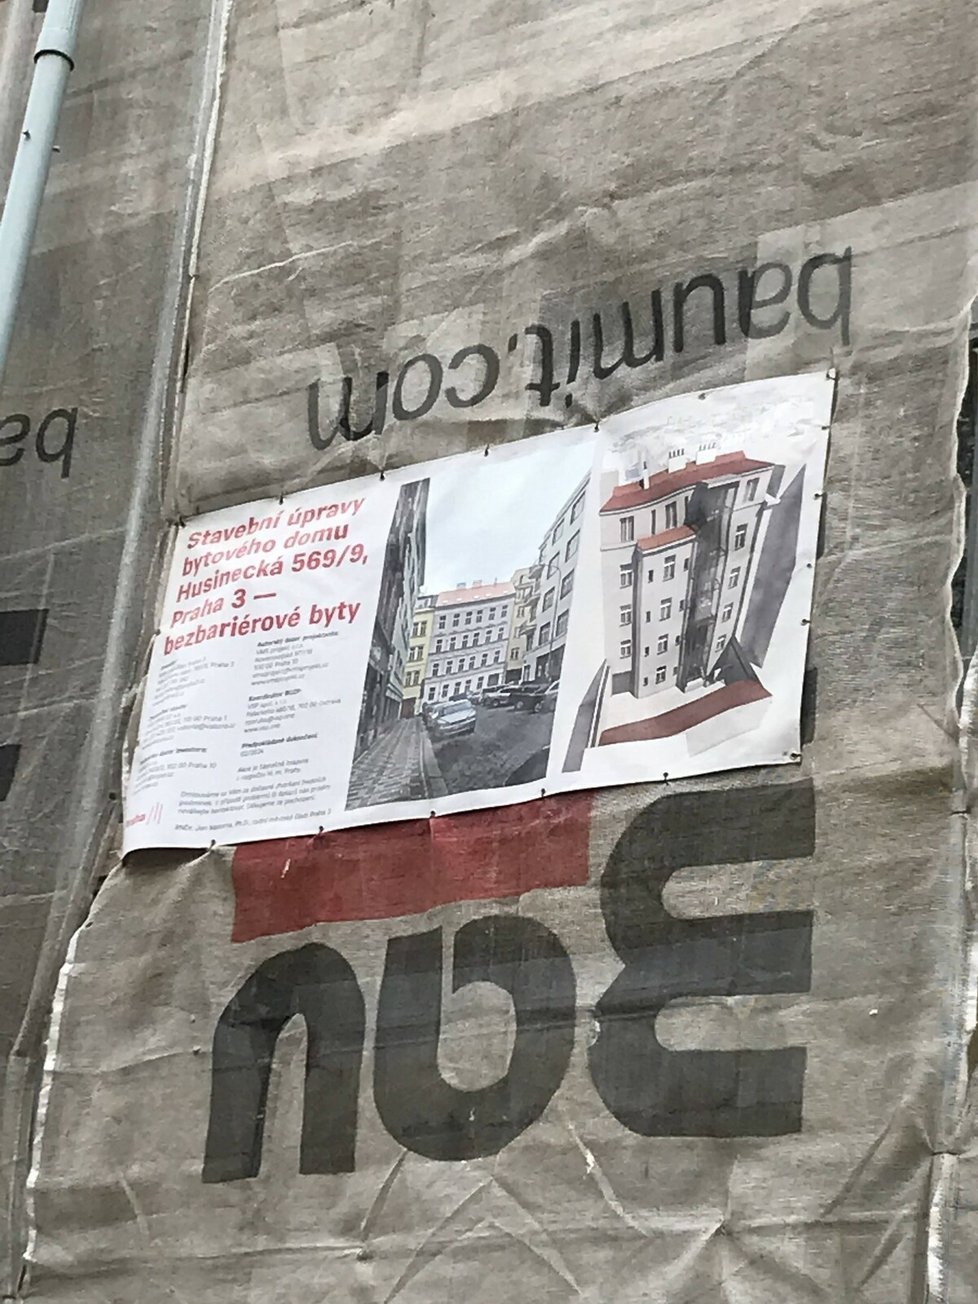 Rekonstrukce bezbariérových bytů v Praze 3 na adrese Husinecká 9